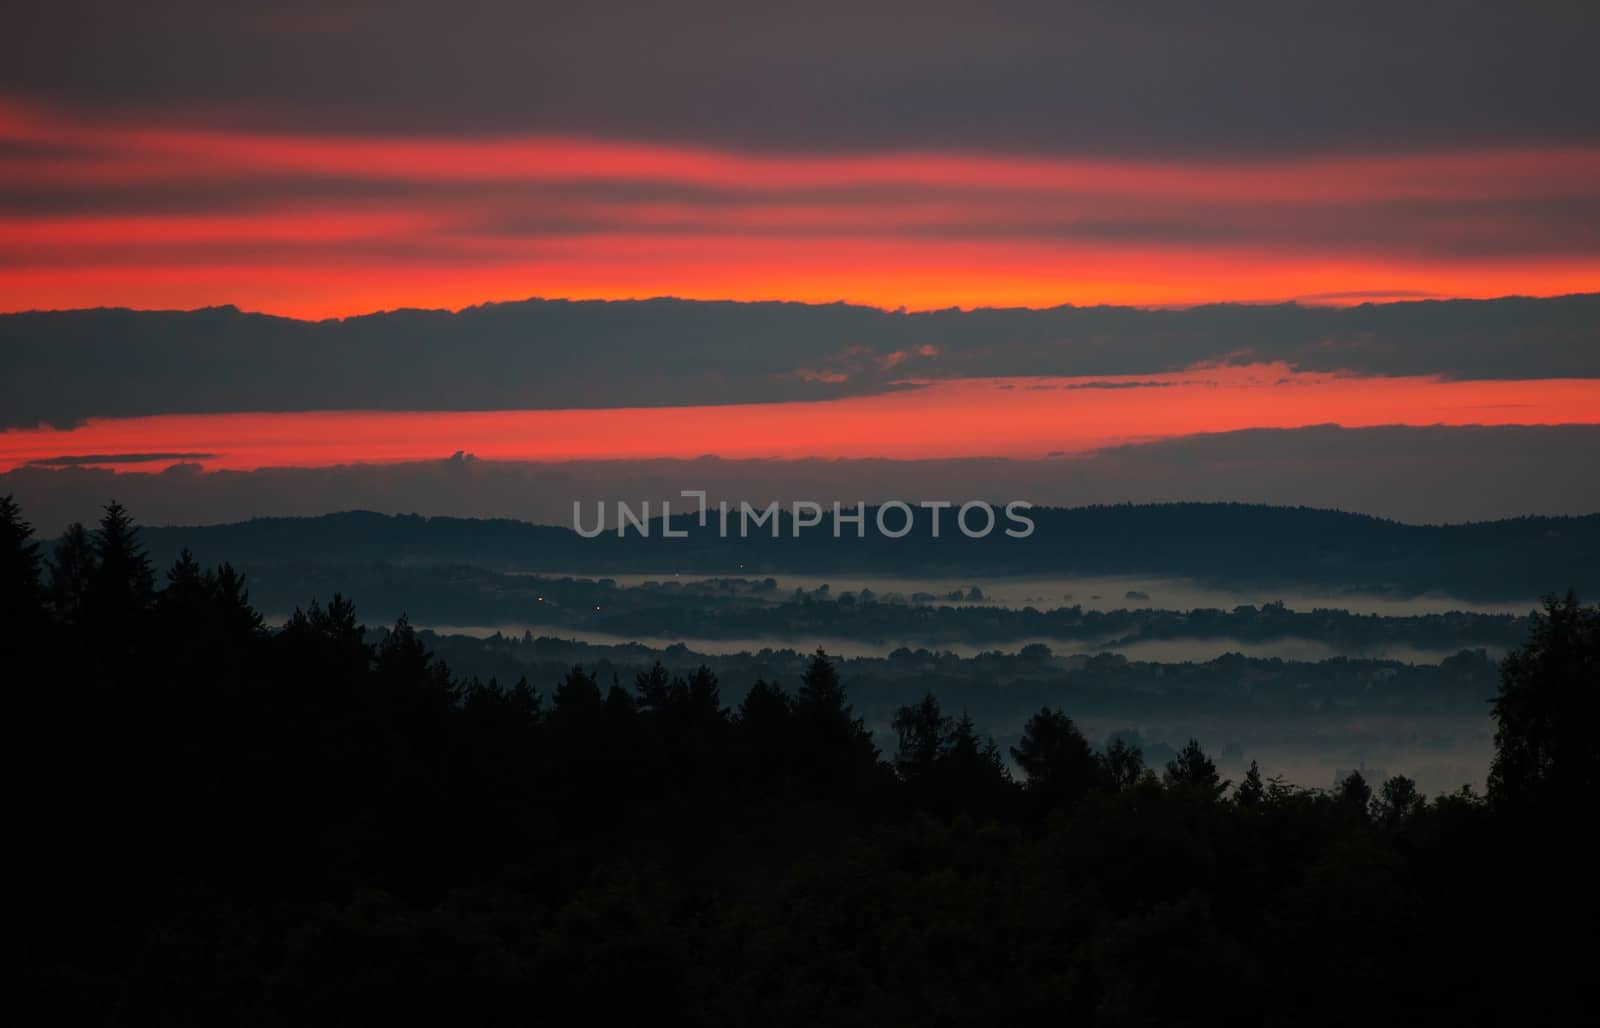 Scenic Foggy Sunset Hills in Lesser Poland, Europe near Krakow.